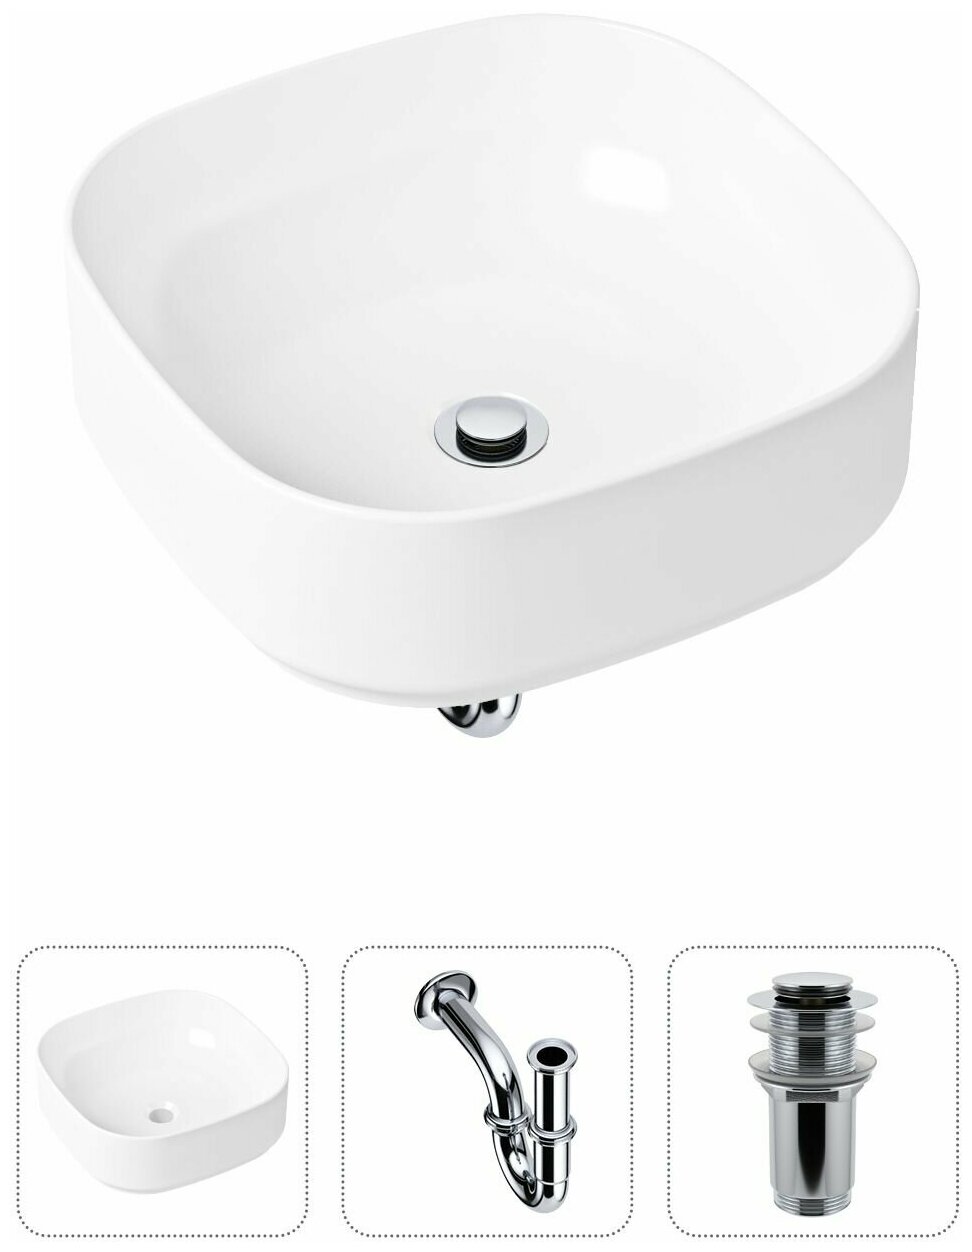 Комплект 3 в 1 Lavinia Boho Bathroom Sink 21520217: накладная фарфоровая раковина 40 см, металлический сифон, донный клапан